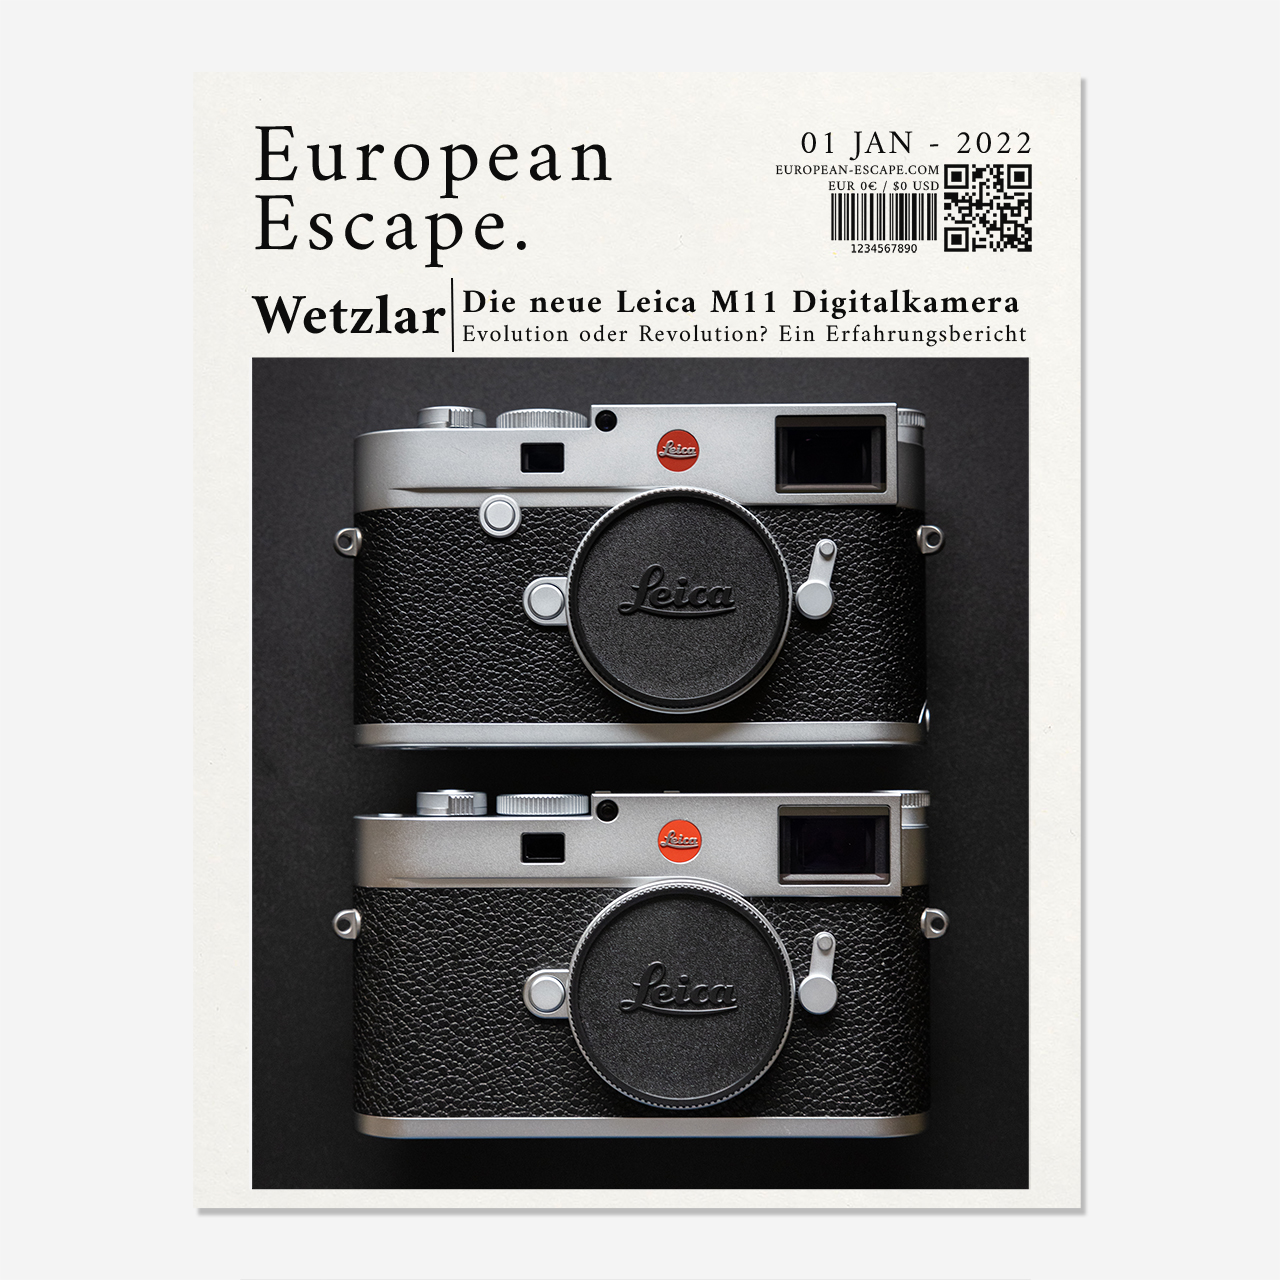 Titelbild, Review, Testbericht, Leica M11, Leica M10, Digitalkamera, Messsucherkamera, Rangefinder